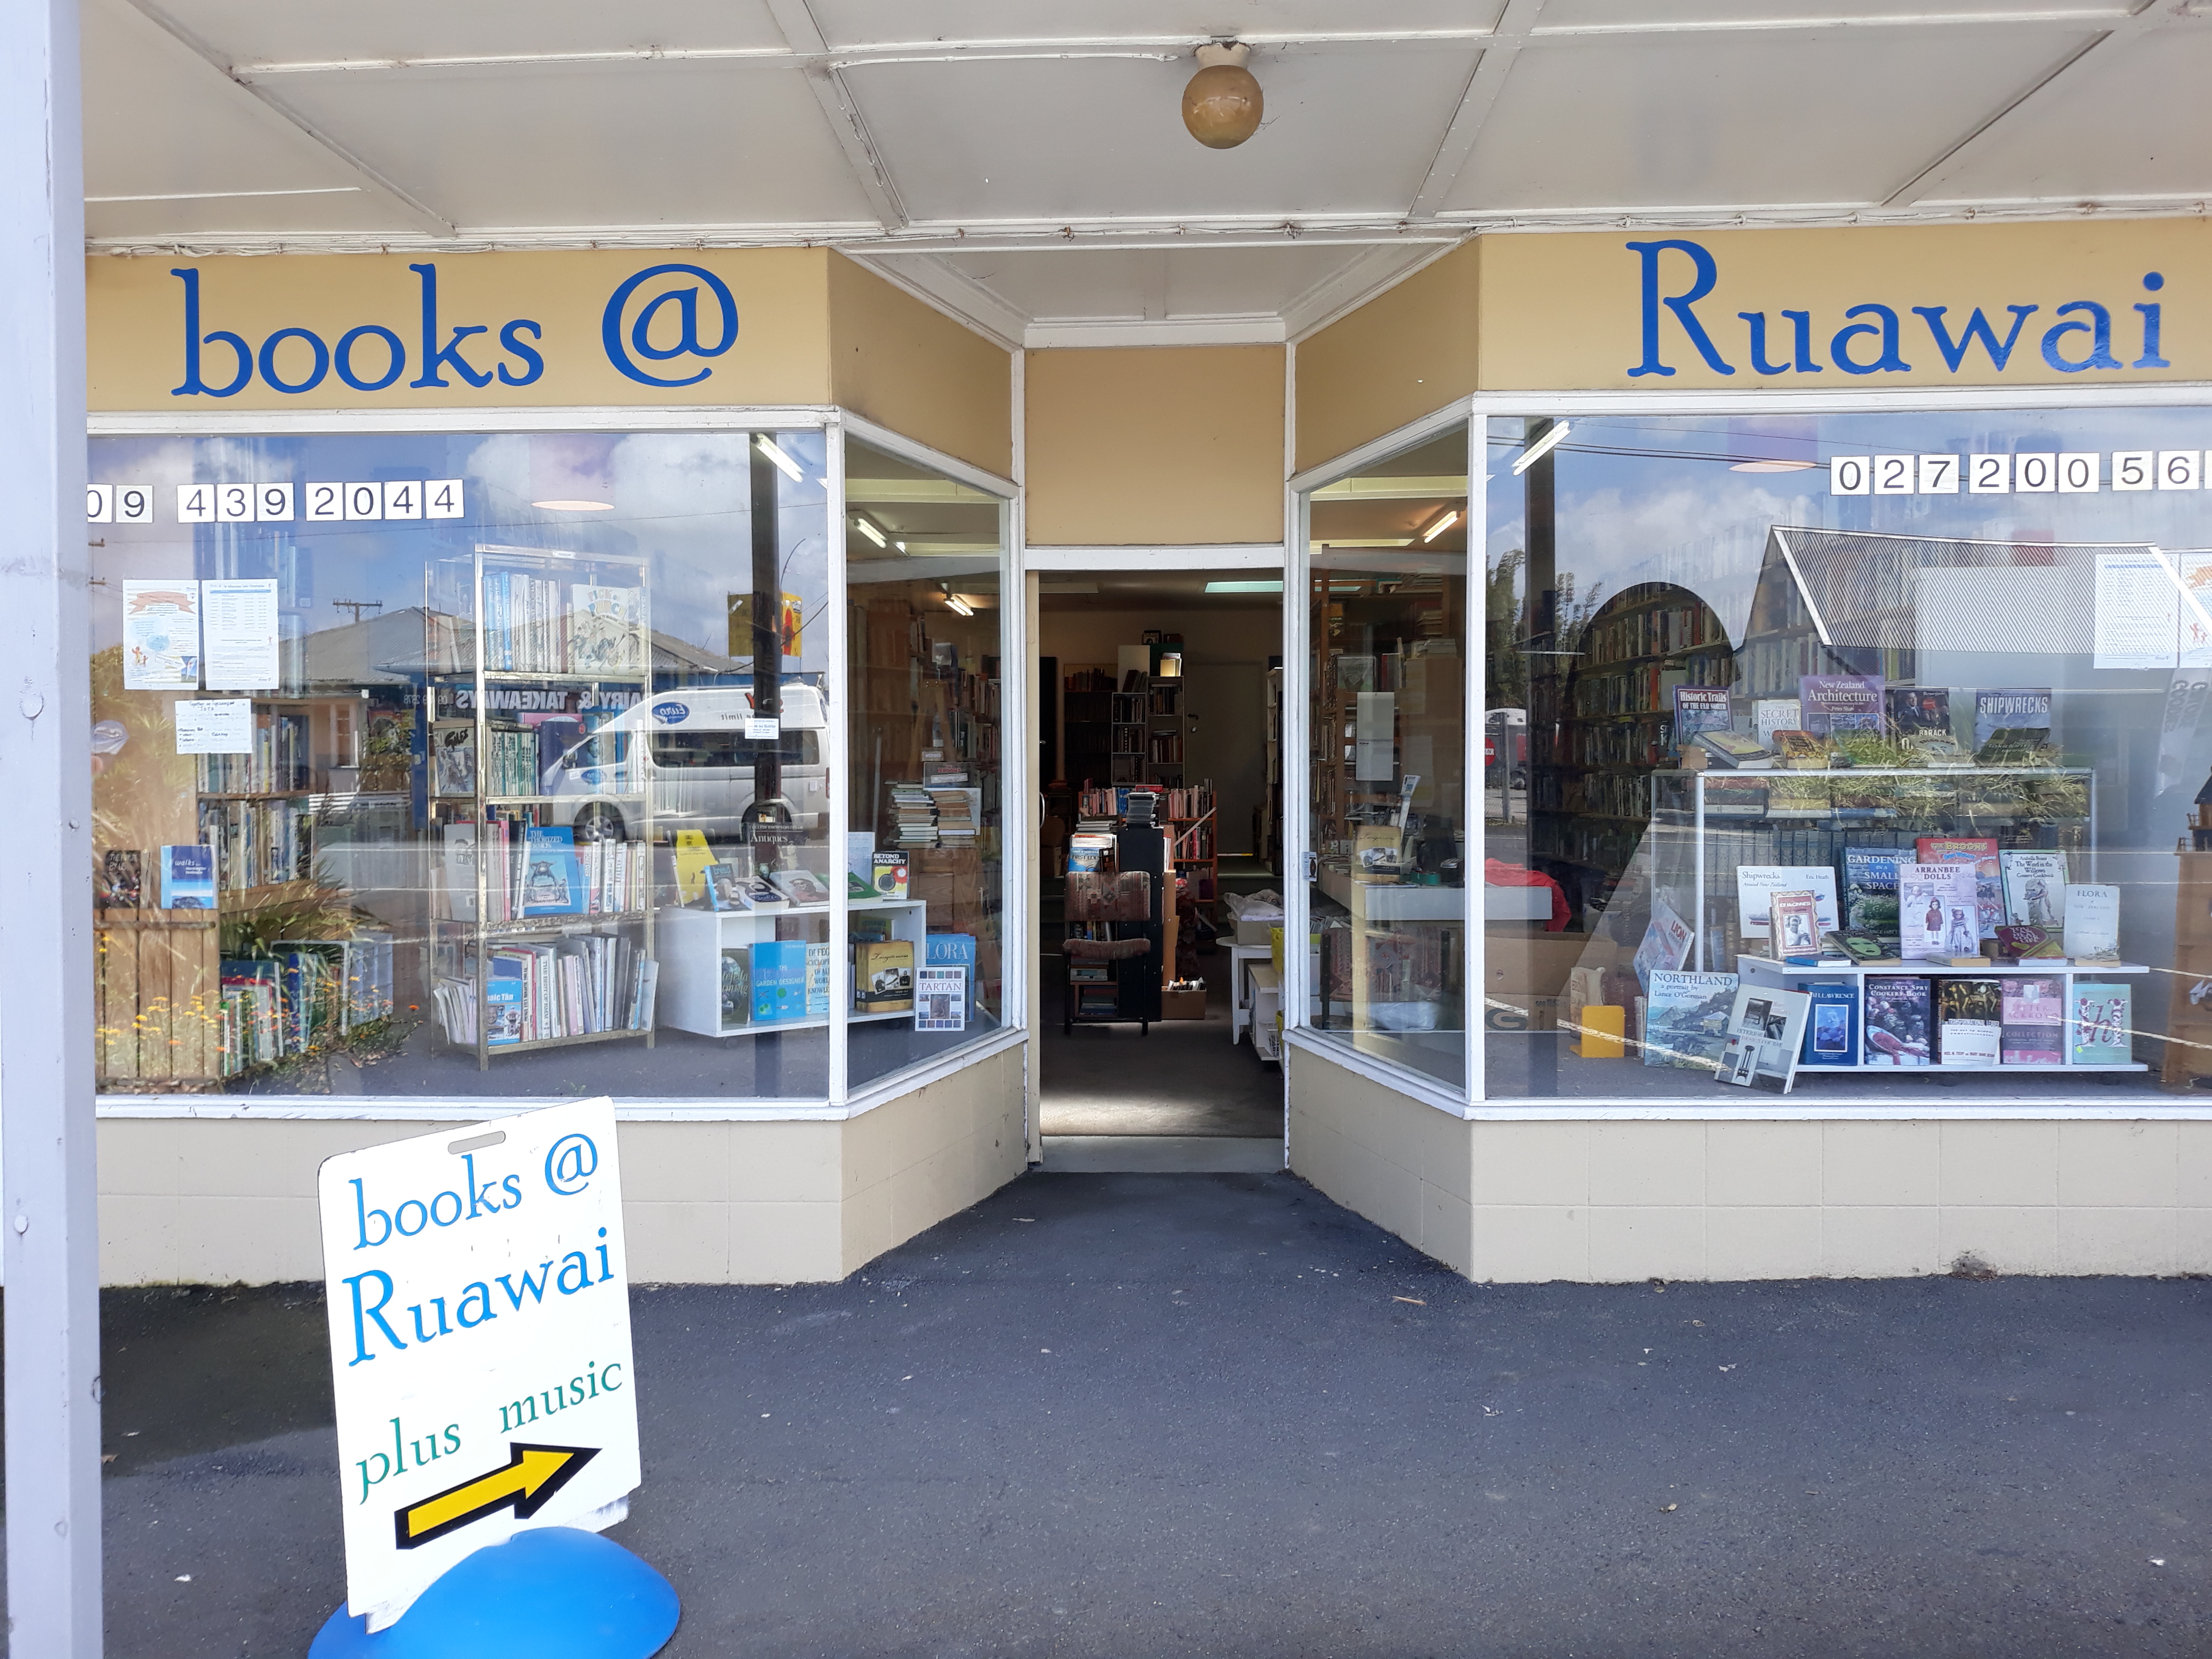 Books at Ruawai